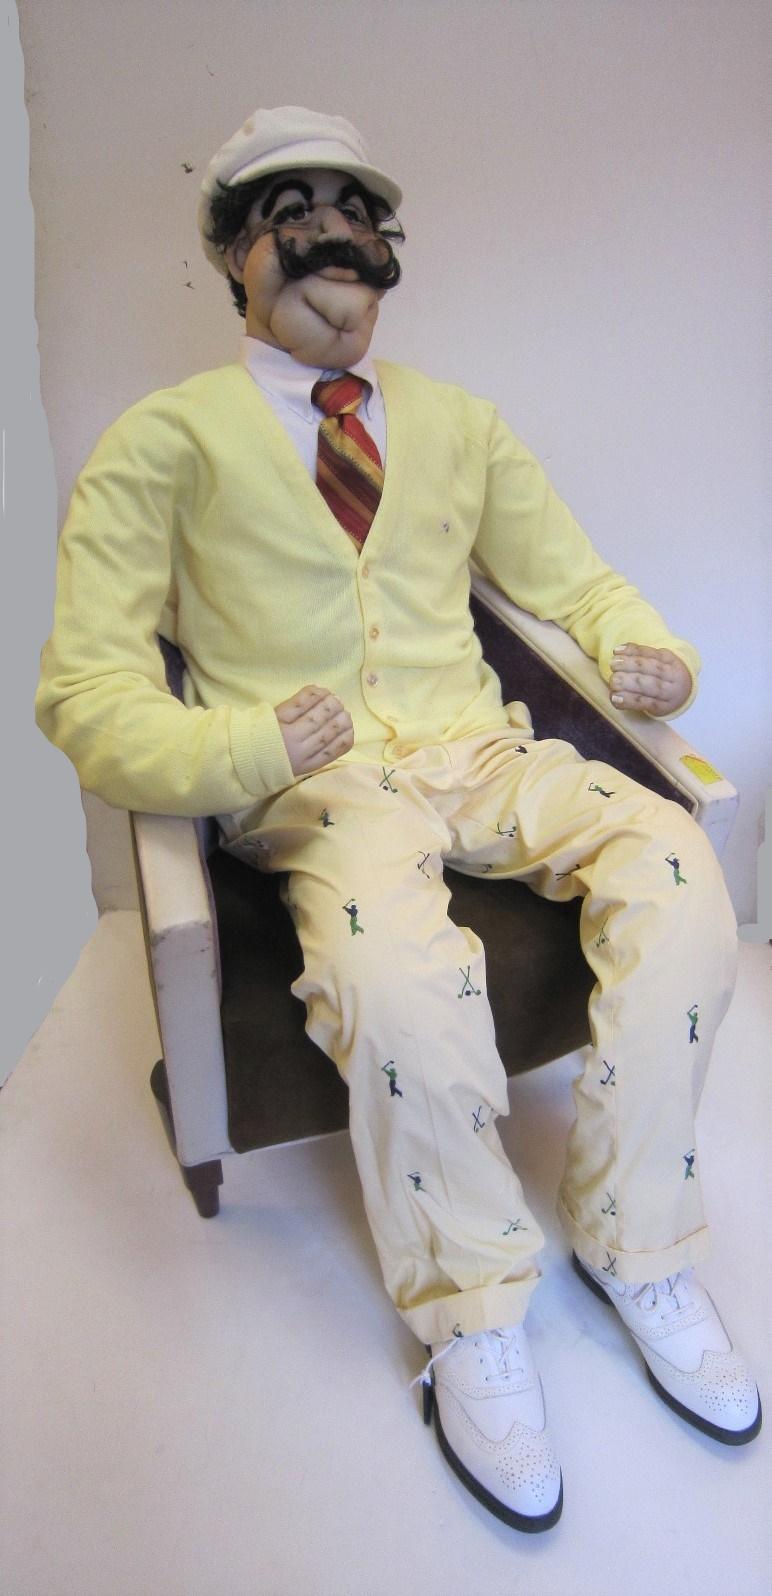 Eine fabelhafte und amüsante lebensgroße weiche Skulptur eines sportlichen Mannes, der als Golfer gekleidet ist, realistisch dargestellt mit originalem Gewand.
 Der Golfer trägt alle authentische Kleidung, Arnold Palmer Größe 46 XL Pullover,